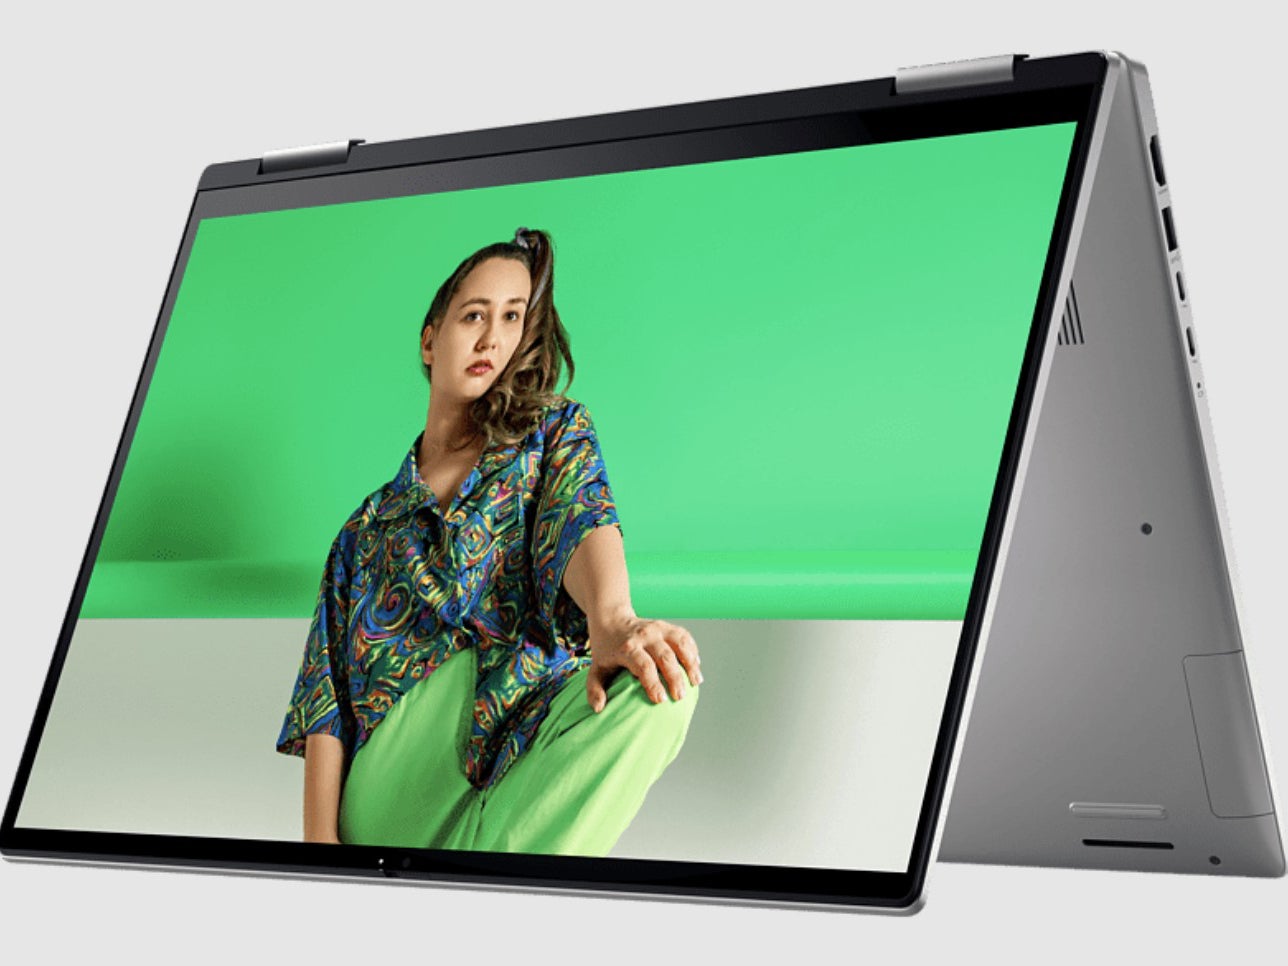 plak pil bon Notebook mit i7 und 16 GB RAM für 699 €: MediaMarkt schmeißt Laptops raus